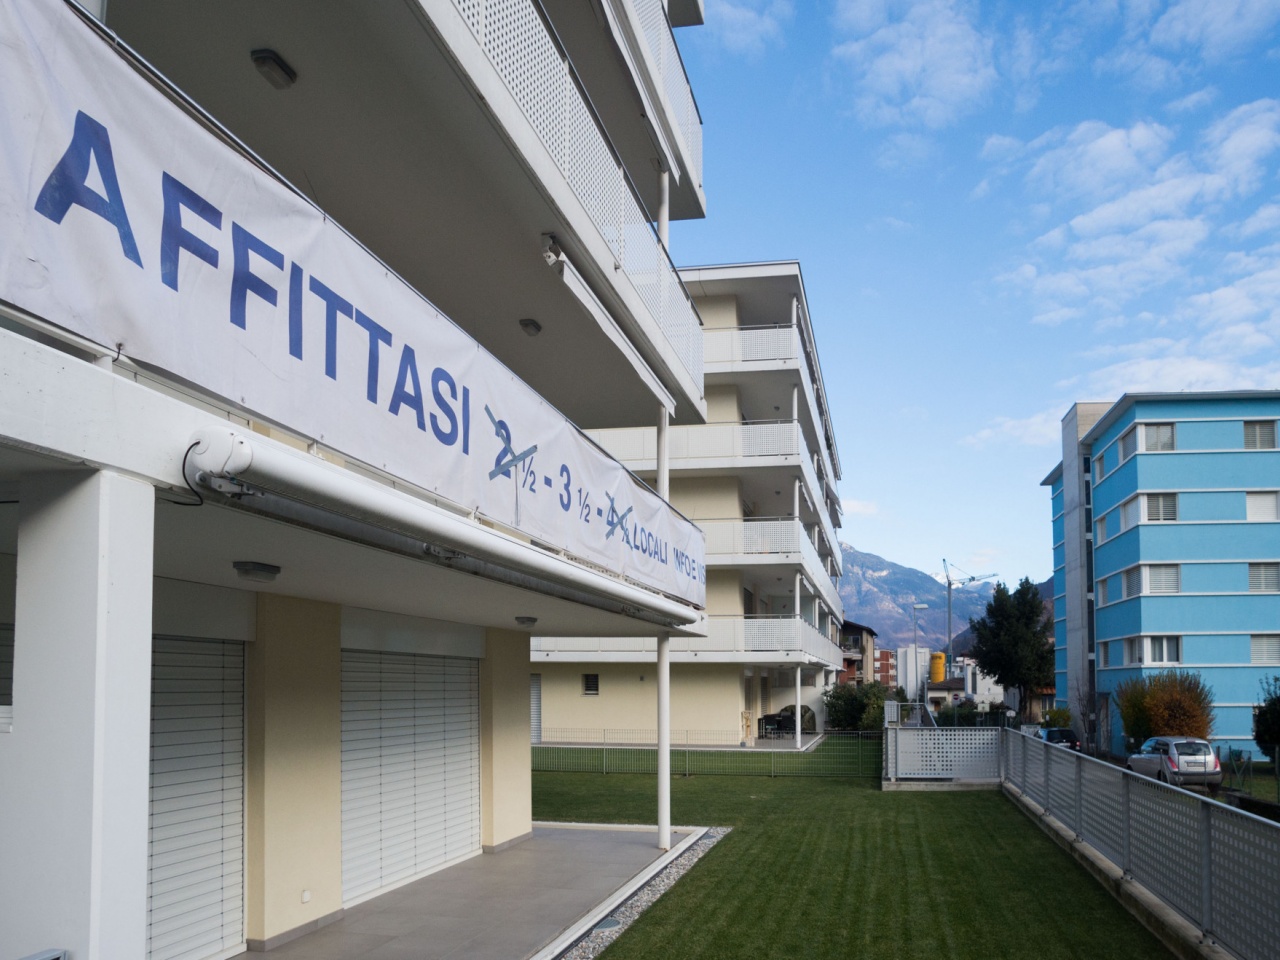 Convocazioni nazionali: sempre più ragazze dell'ACF Ticino selezionate -  Ticinonline